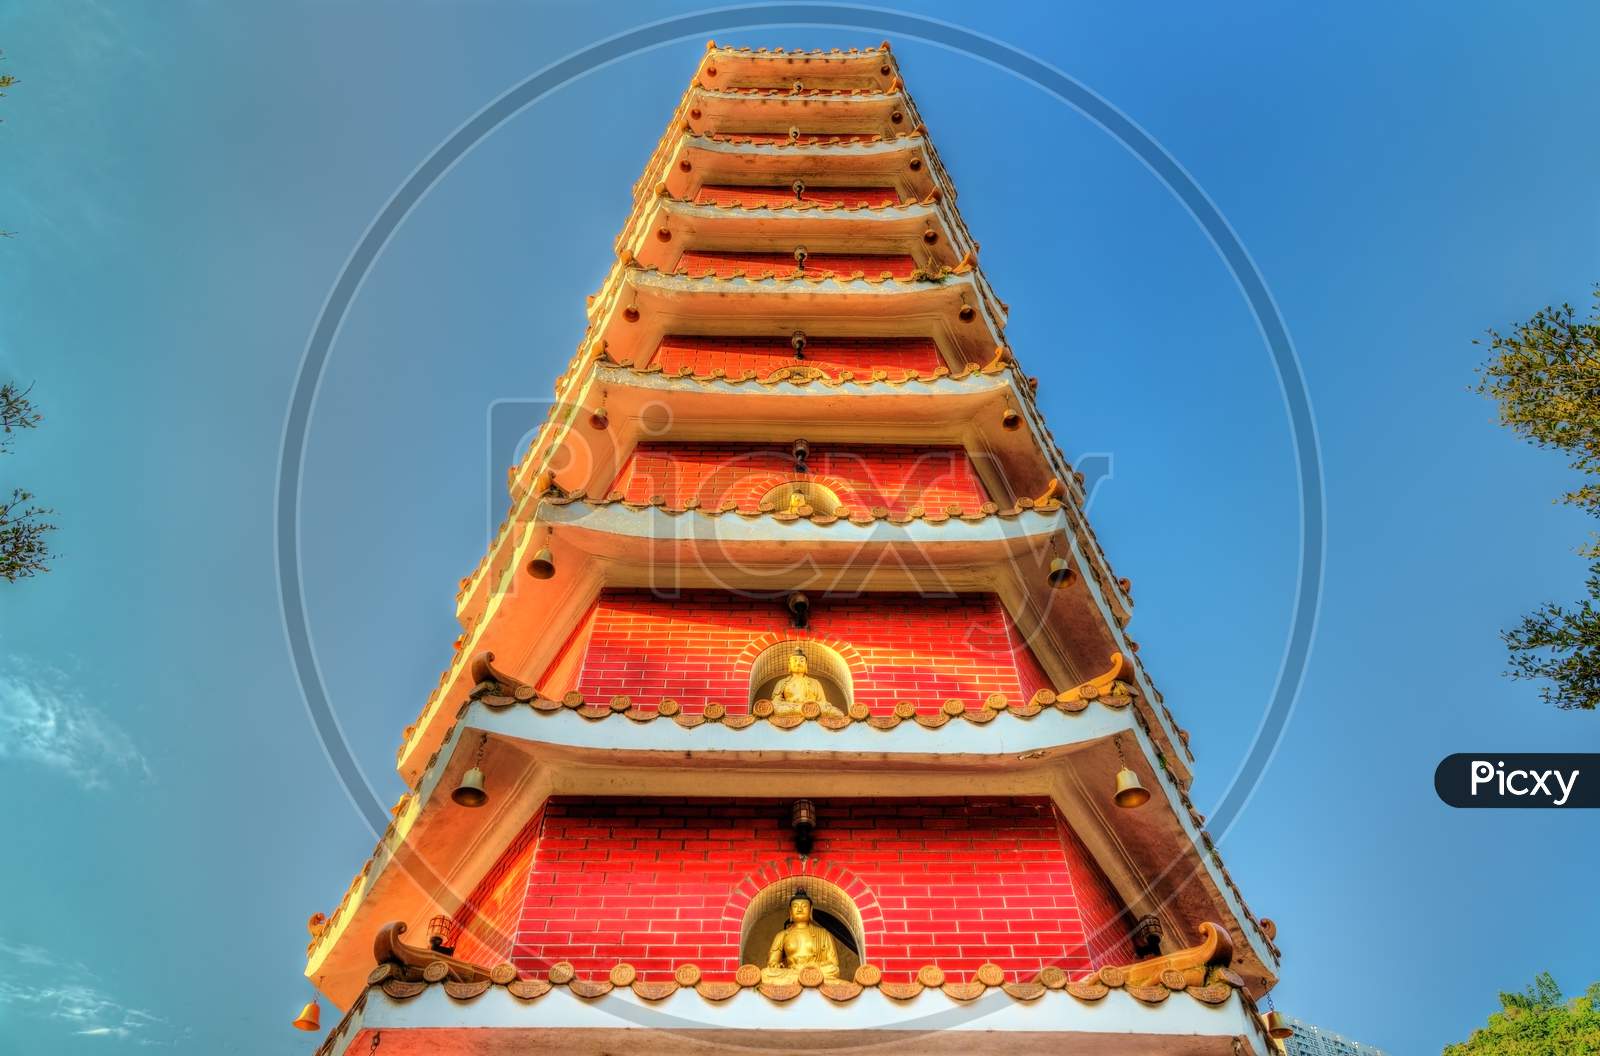 Pagoda At The Ten Thousand Buddhas Monastery In Hong Kong